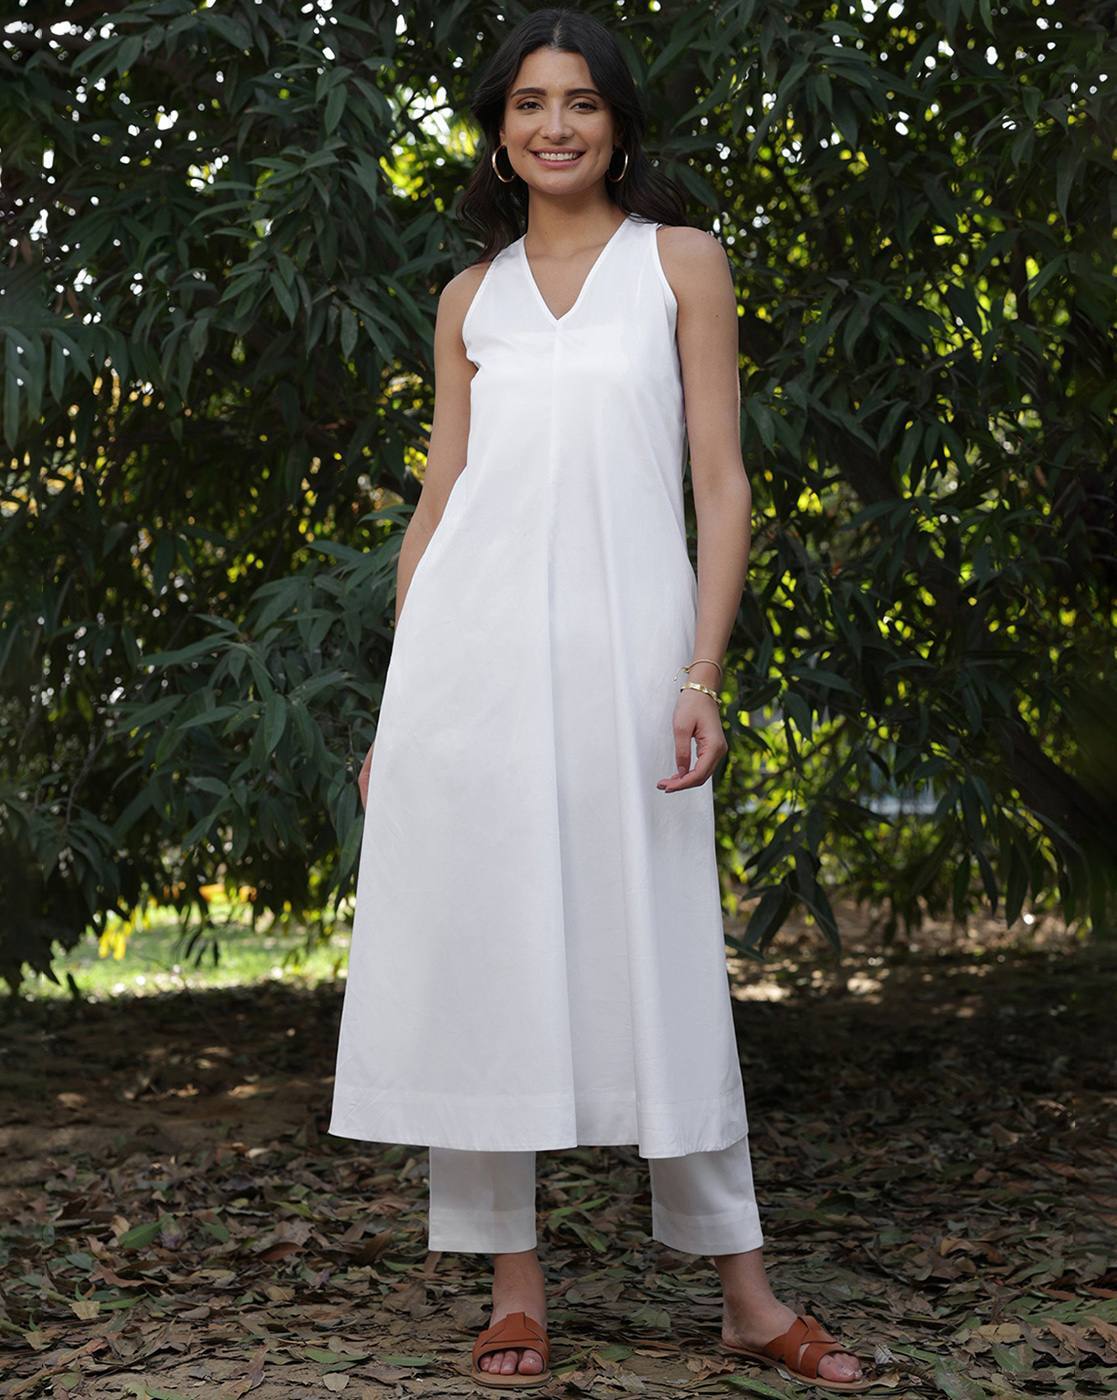 Formal White Dresses - Buy Formal White Dresses online in India